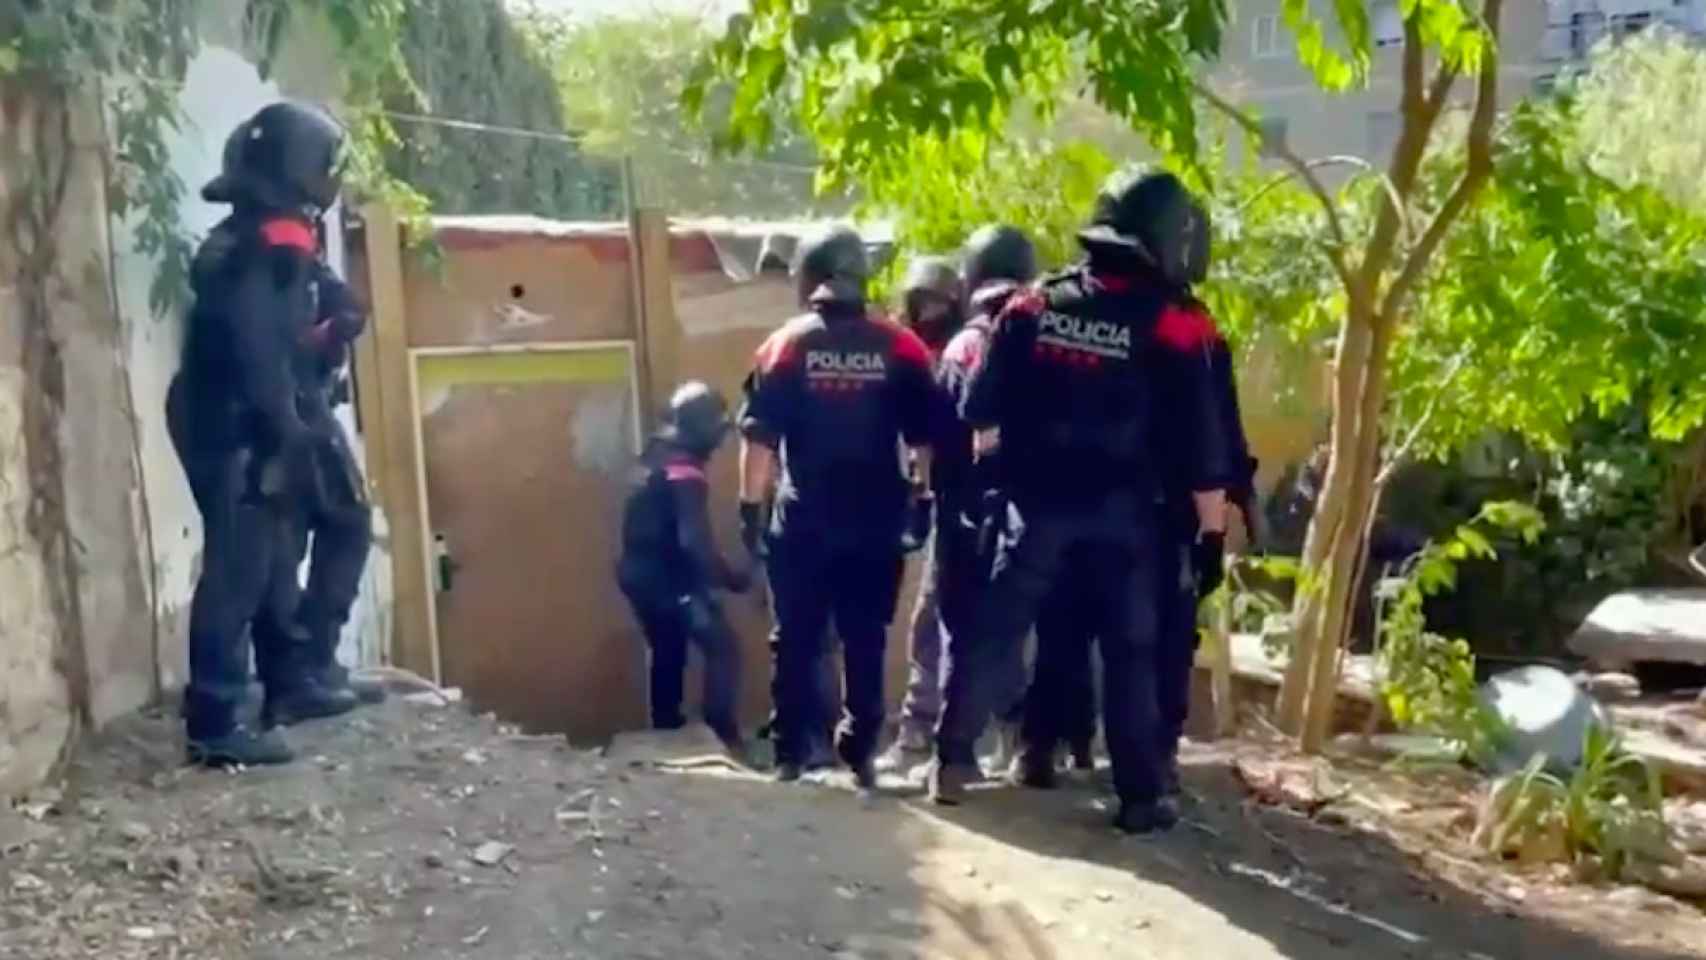 Los Mossos d'Esquadra desmantelando un punto de venta de drogas en Montjuïc / MOSSOS D'ESQUADRA